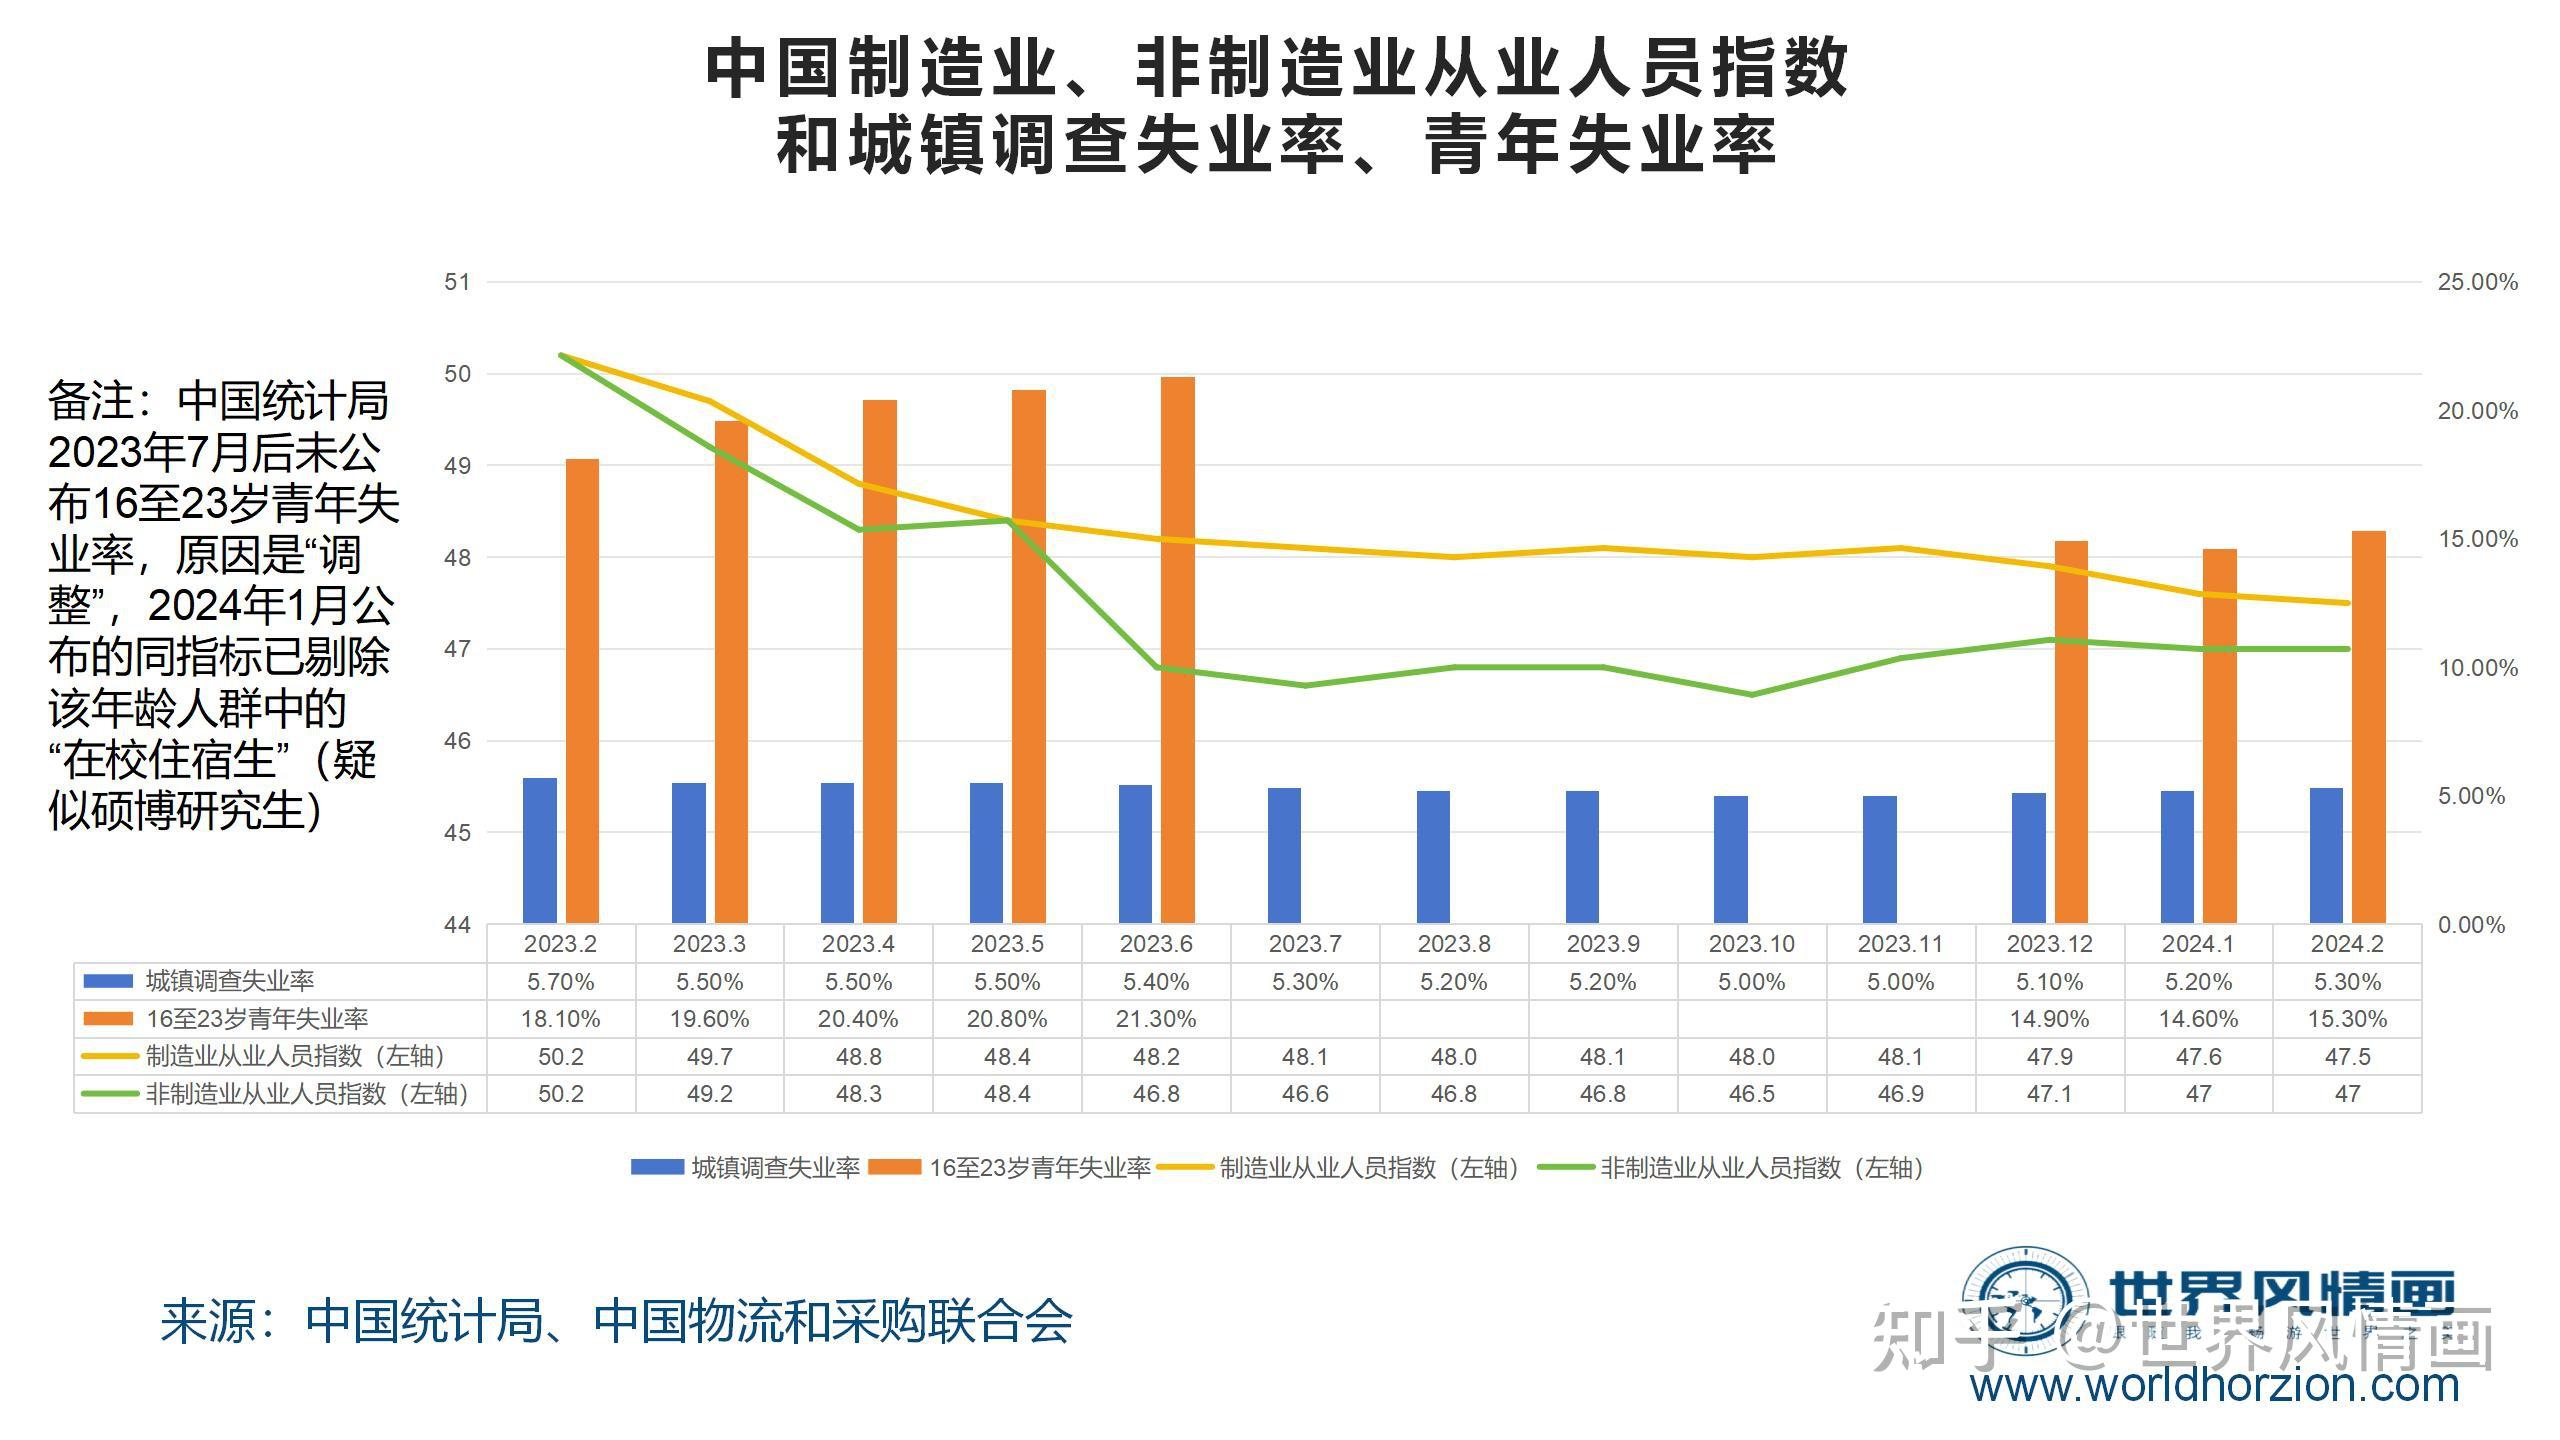 渤海人寿2023年亏损31亿元 持续化解存续风险、清收回款超6亿元